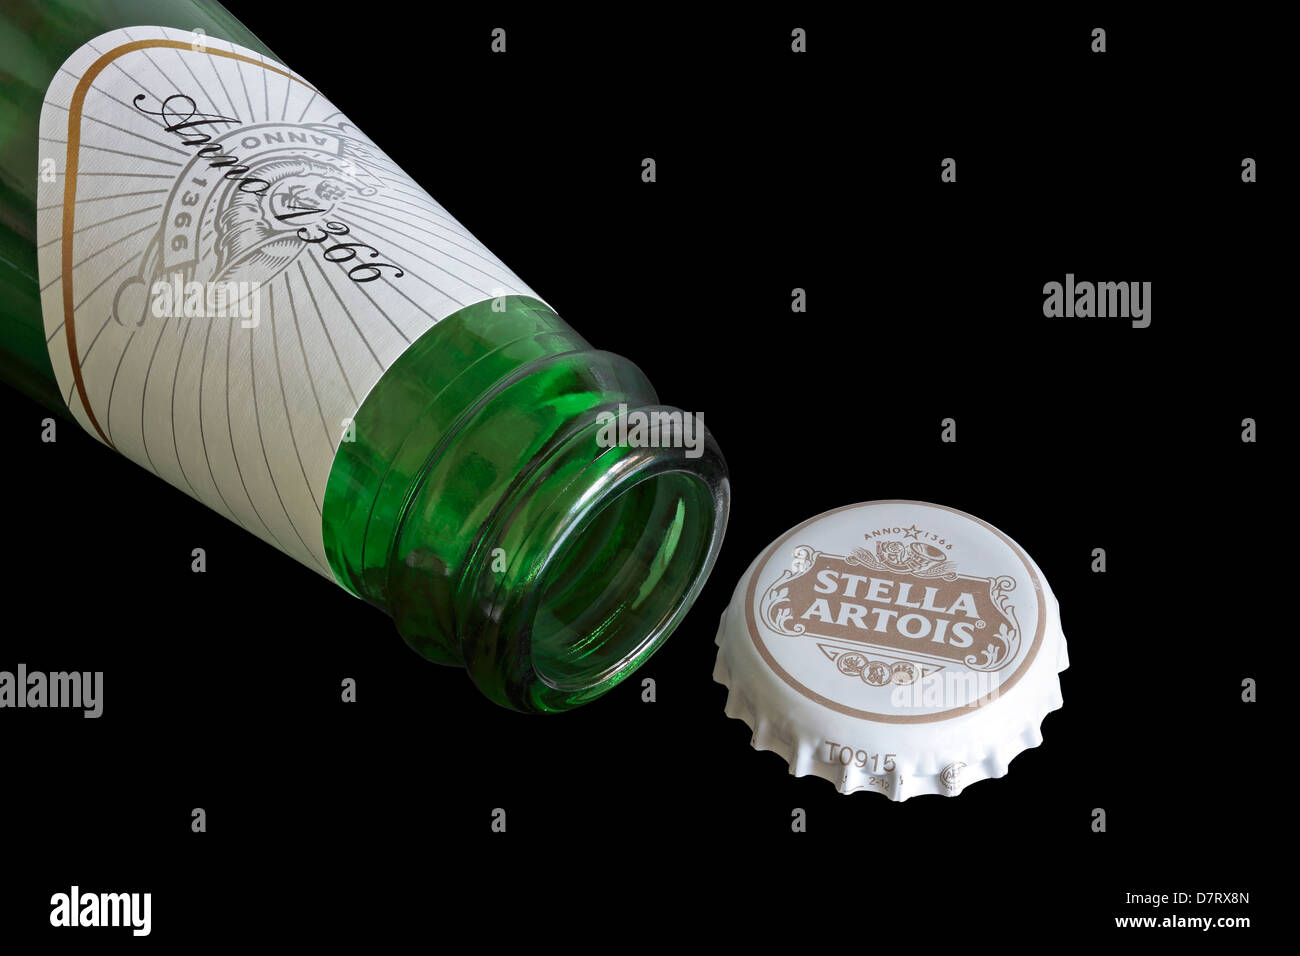 Open Bottle of Stella Artois with cap Stock Photo